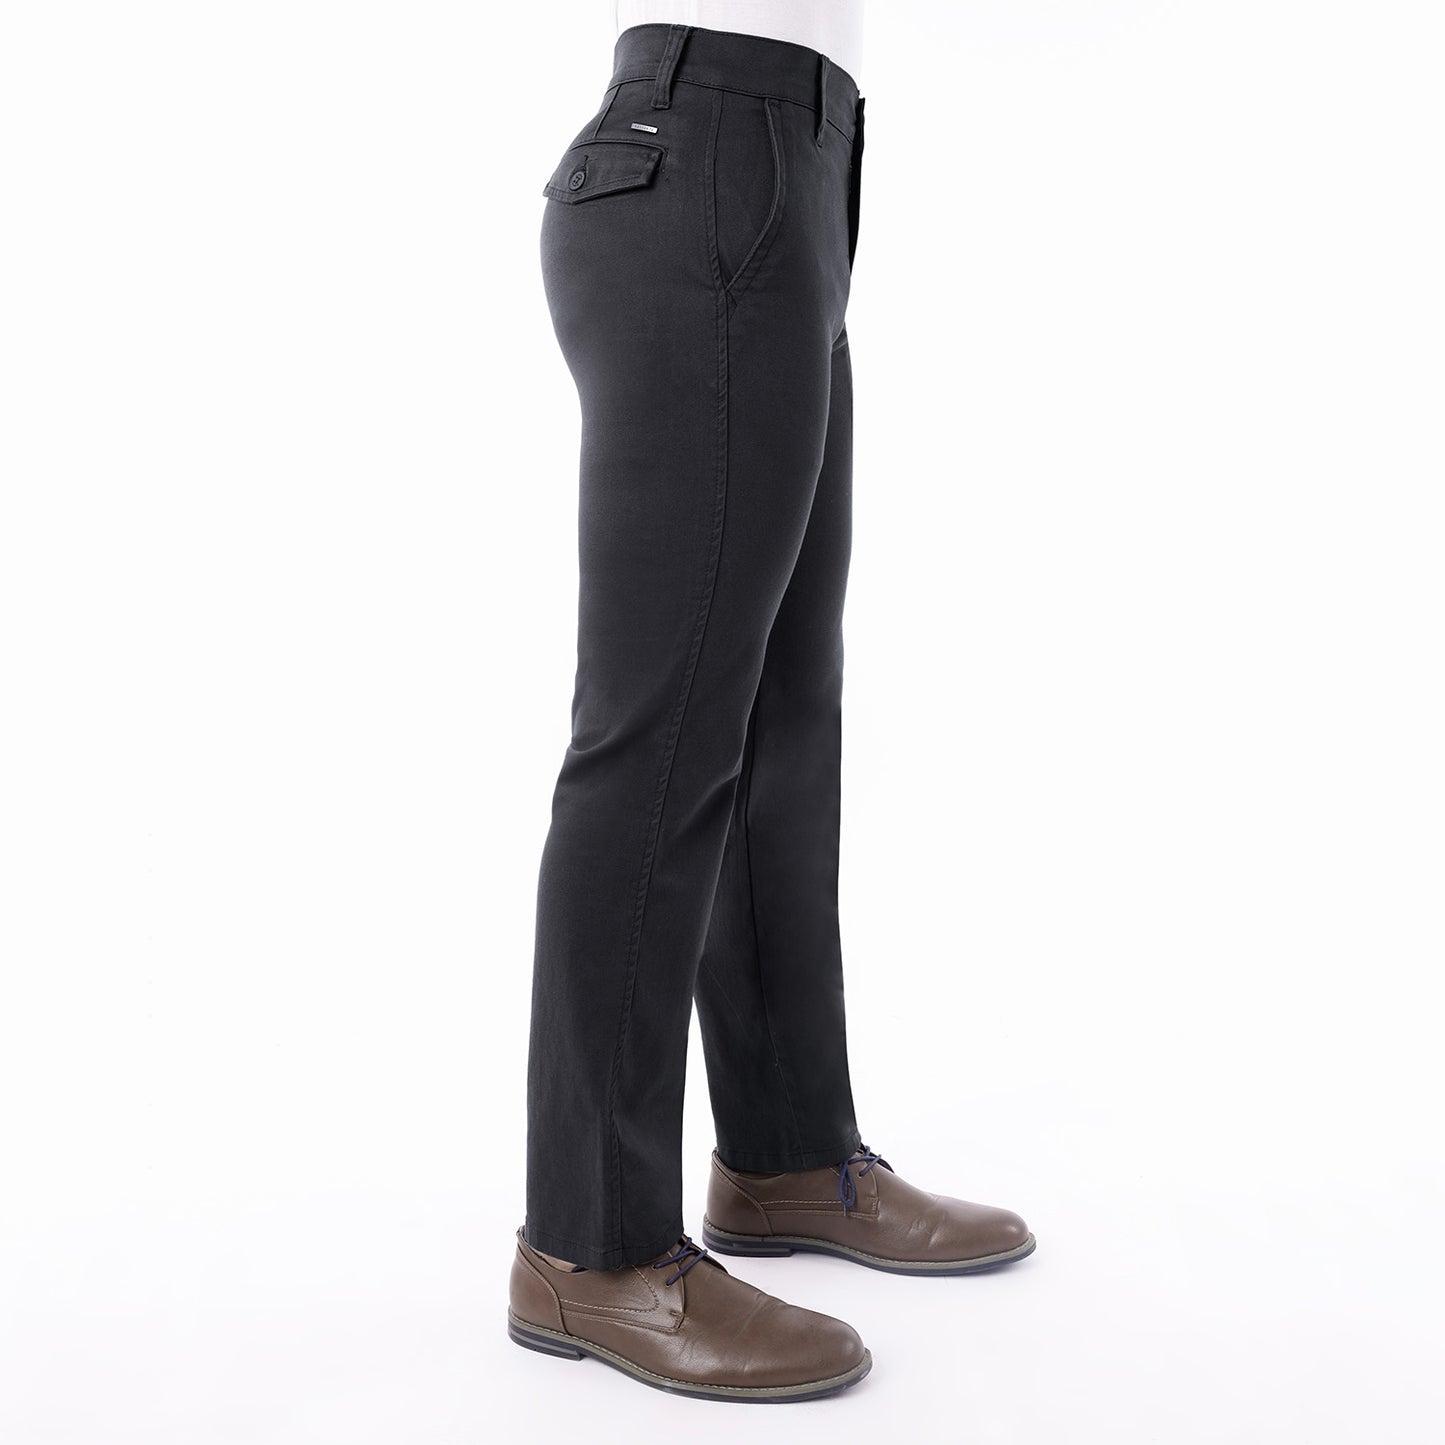 Pantalon Drill Hombre Satinado Regular Fit Charcoal - 230883